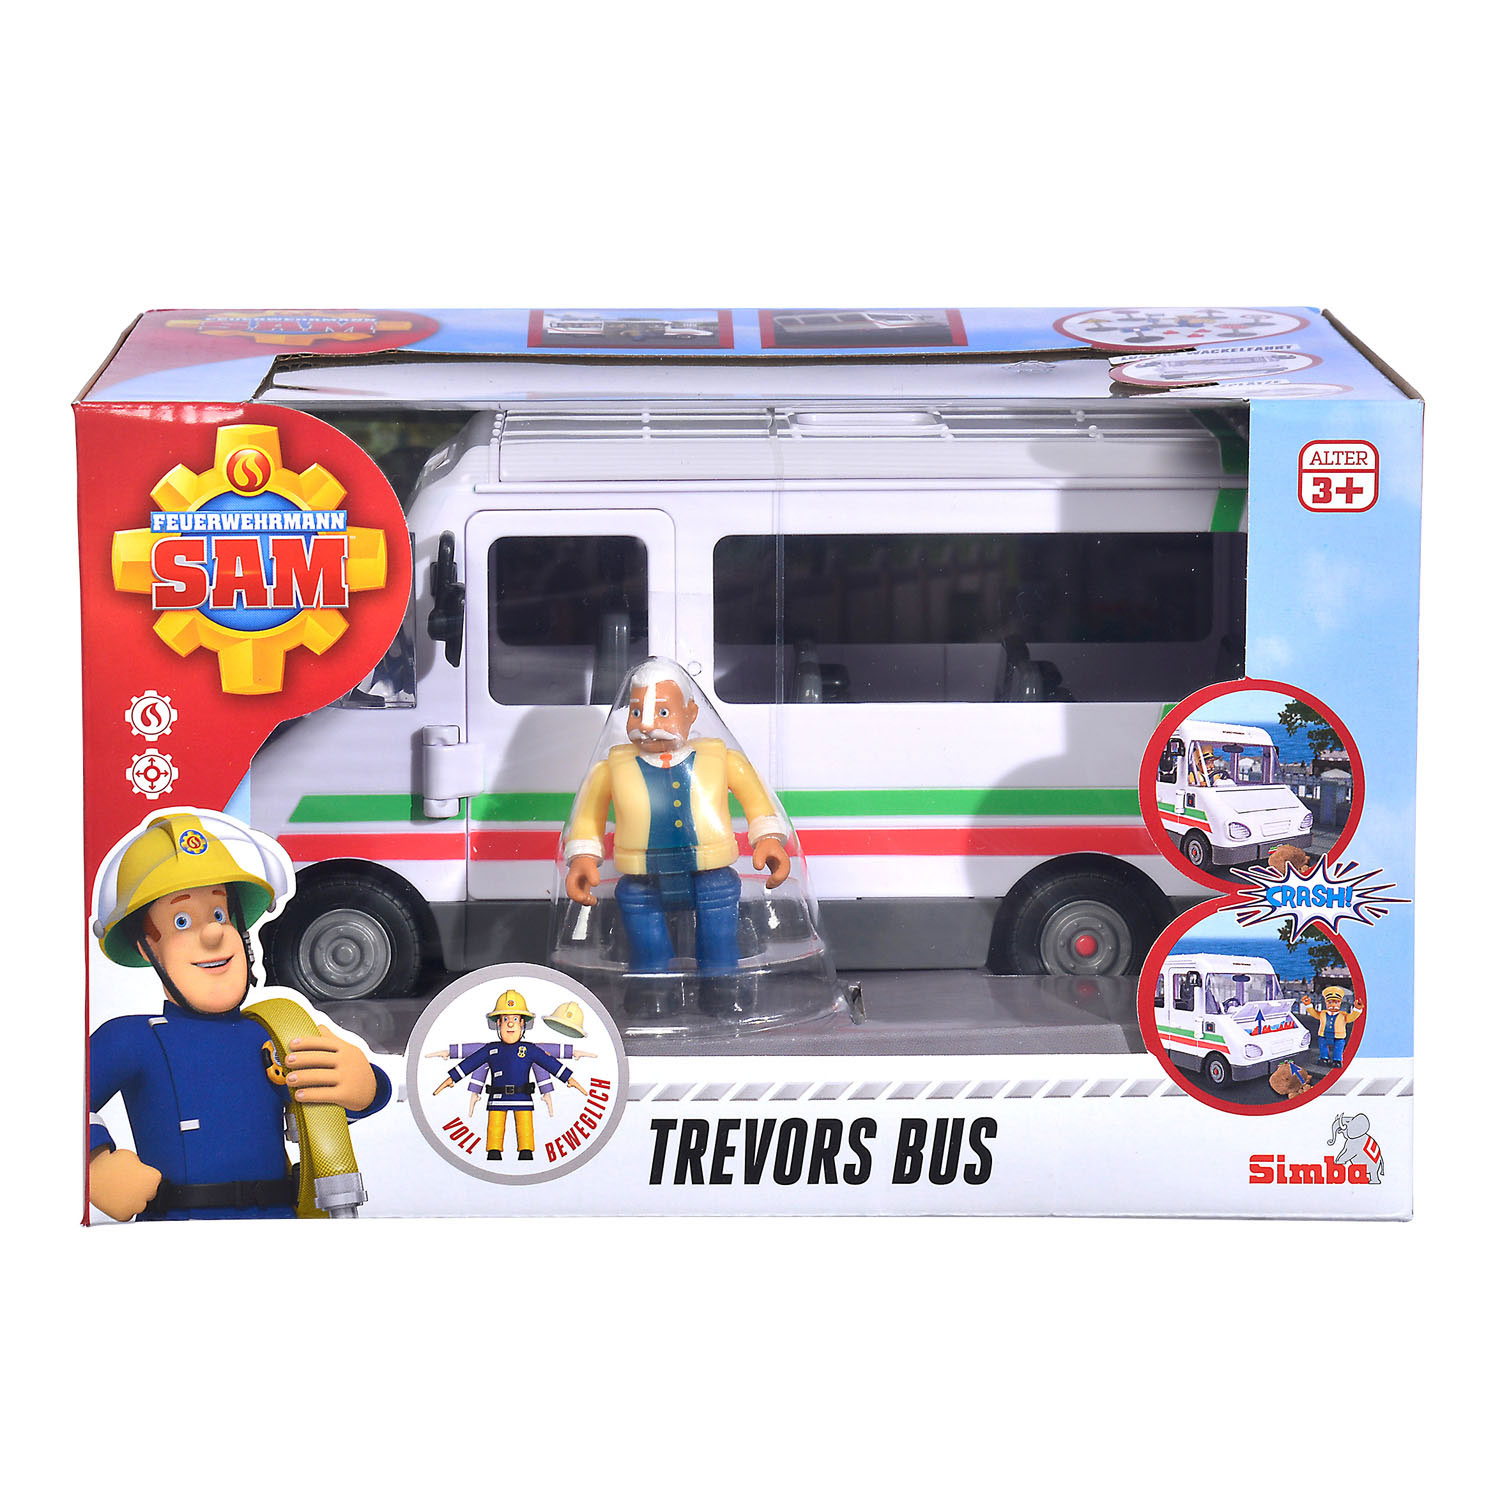 Le bus du Sam le pompier Trevor